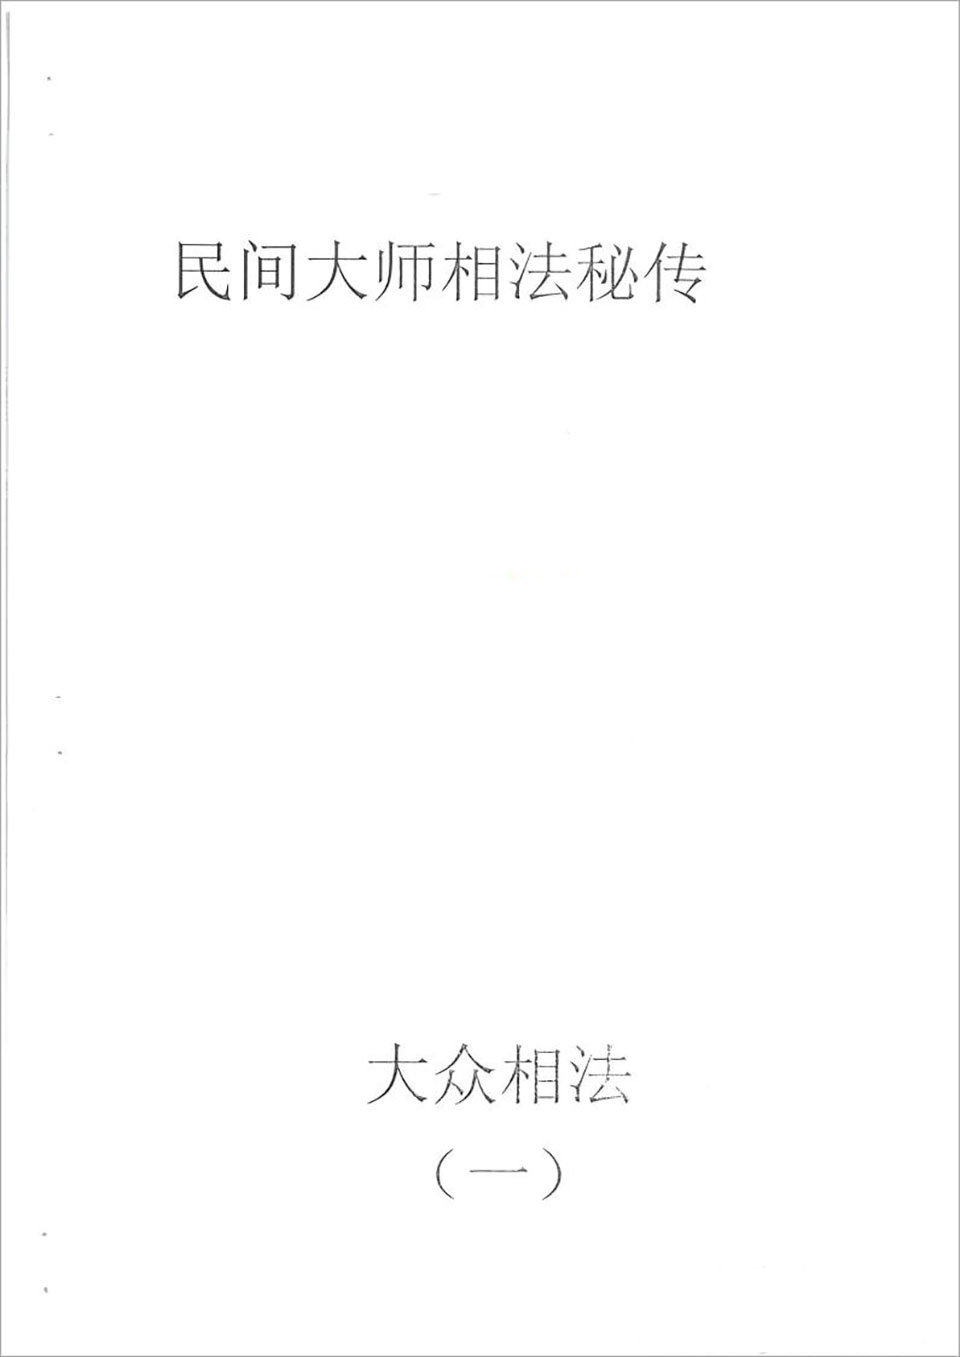 何培甫-大众相法实战授徒手写资料1（60页）.pdf